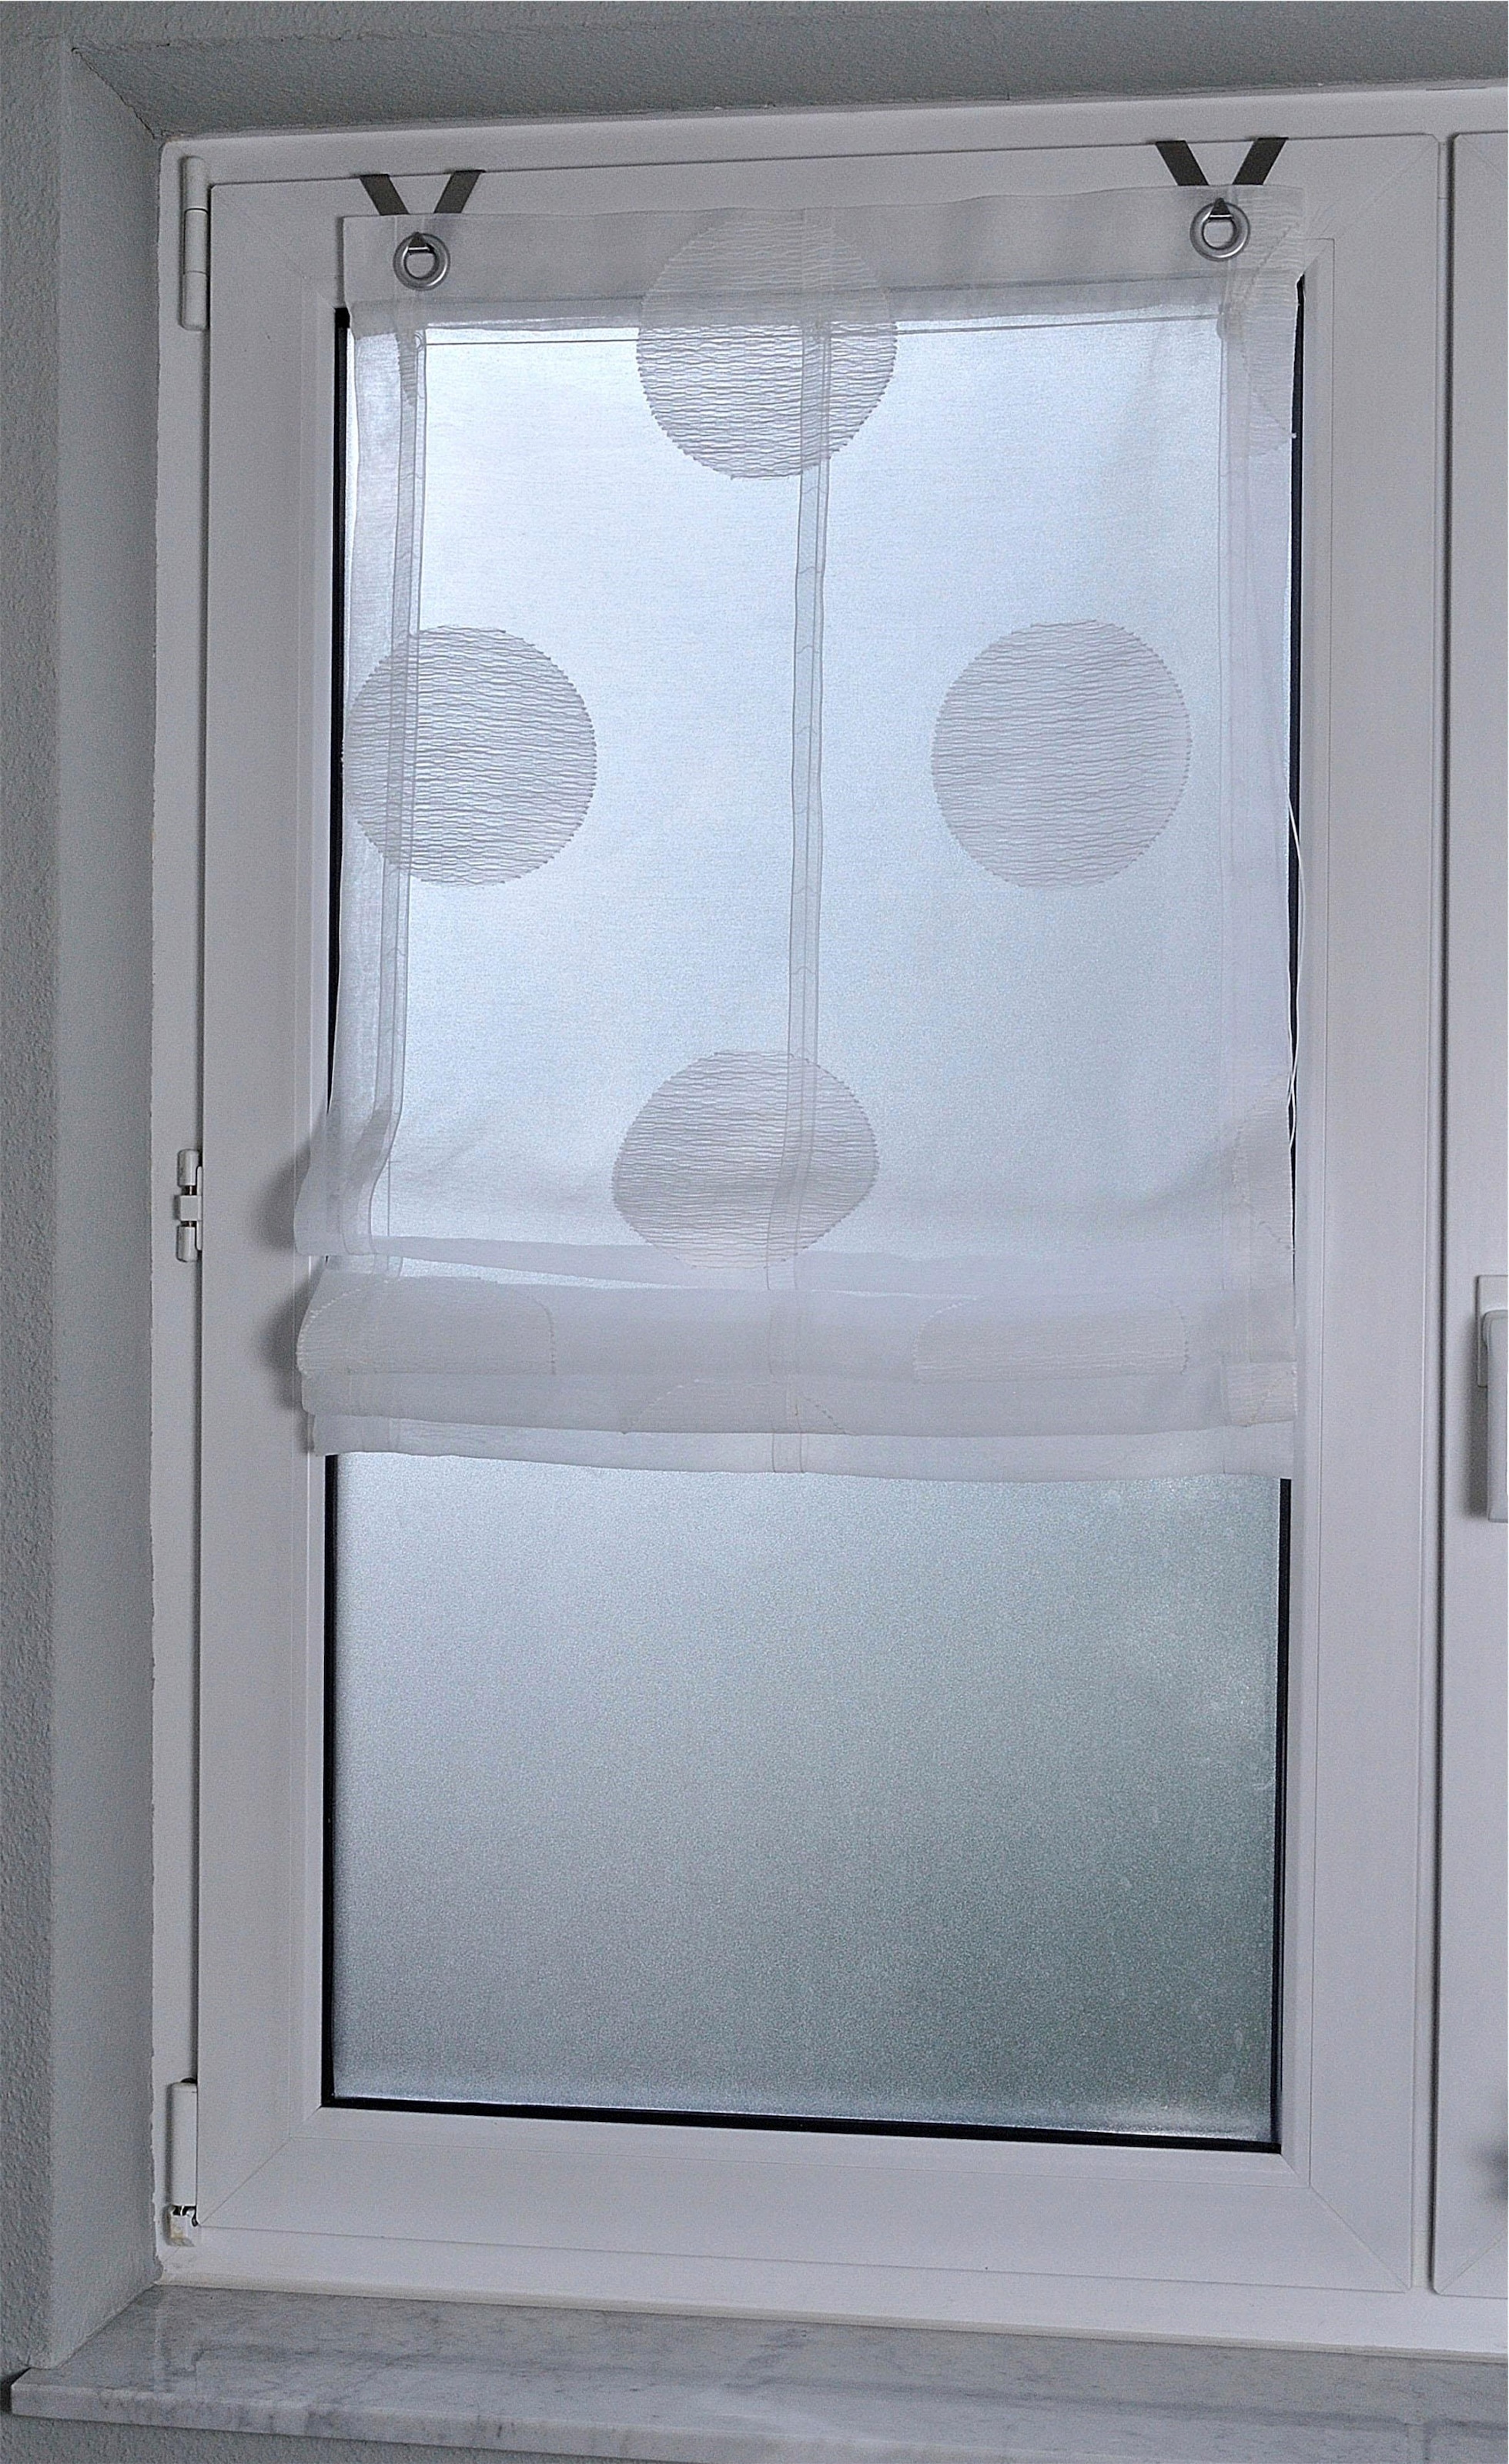 Kutti Raffrollo »Rhonda«, mit Hakenaufhängung, ohne Bohren, weiß, halbtransparent, mit Motiv, gemustert, mit Fensterhaken